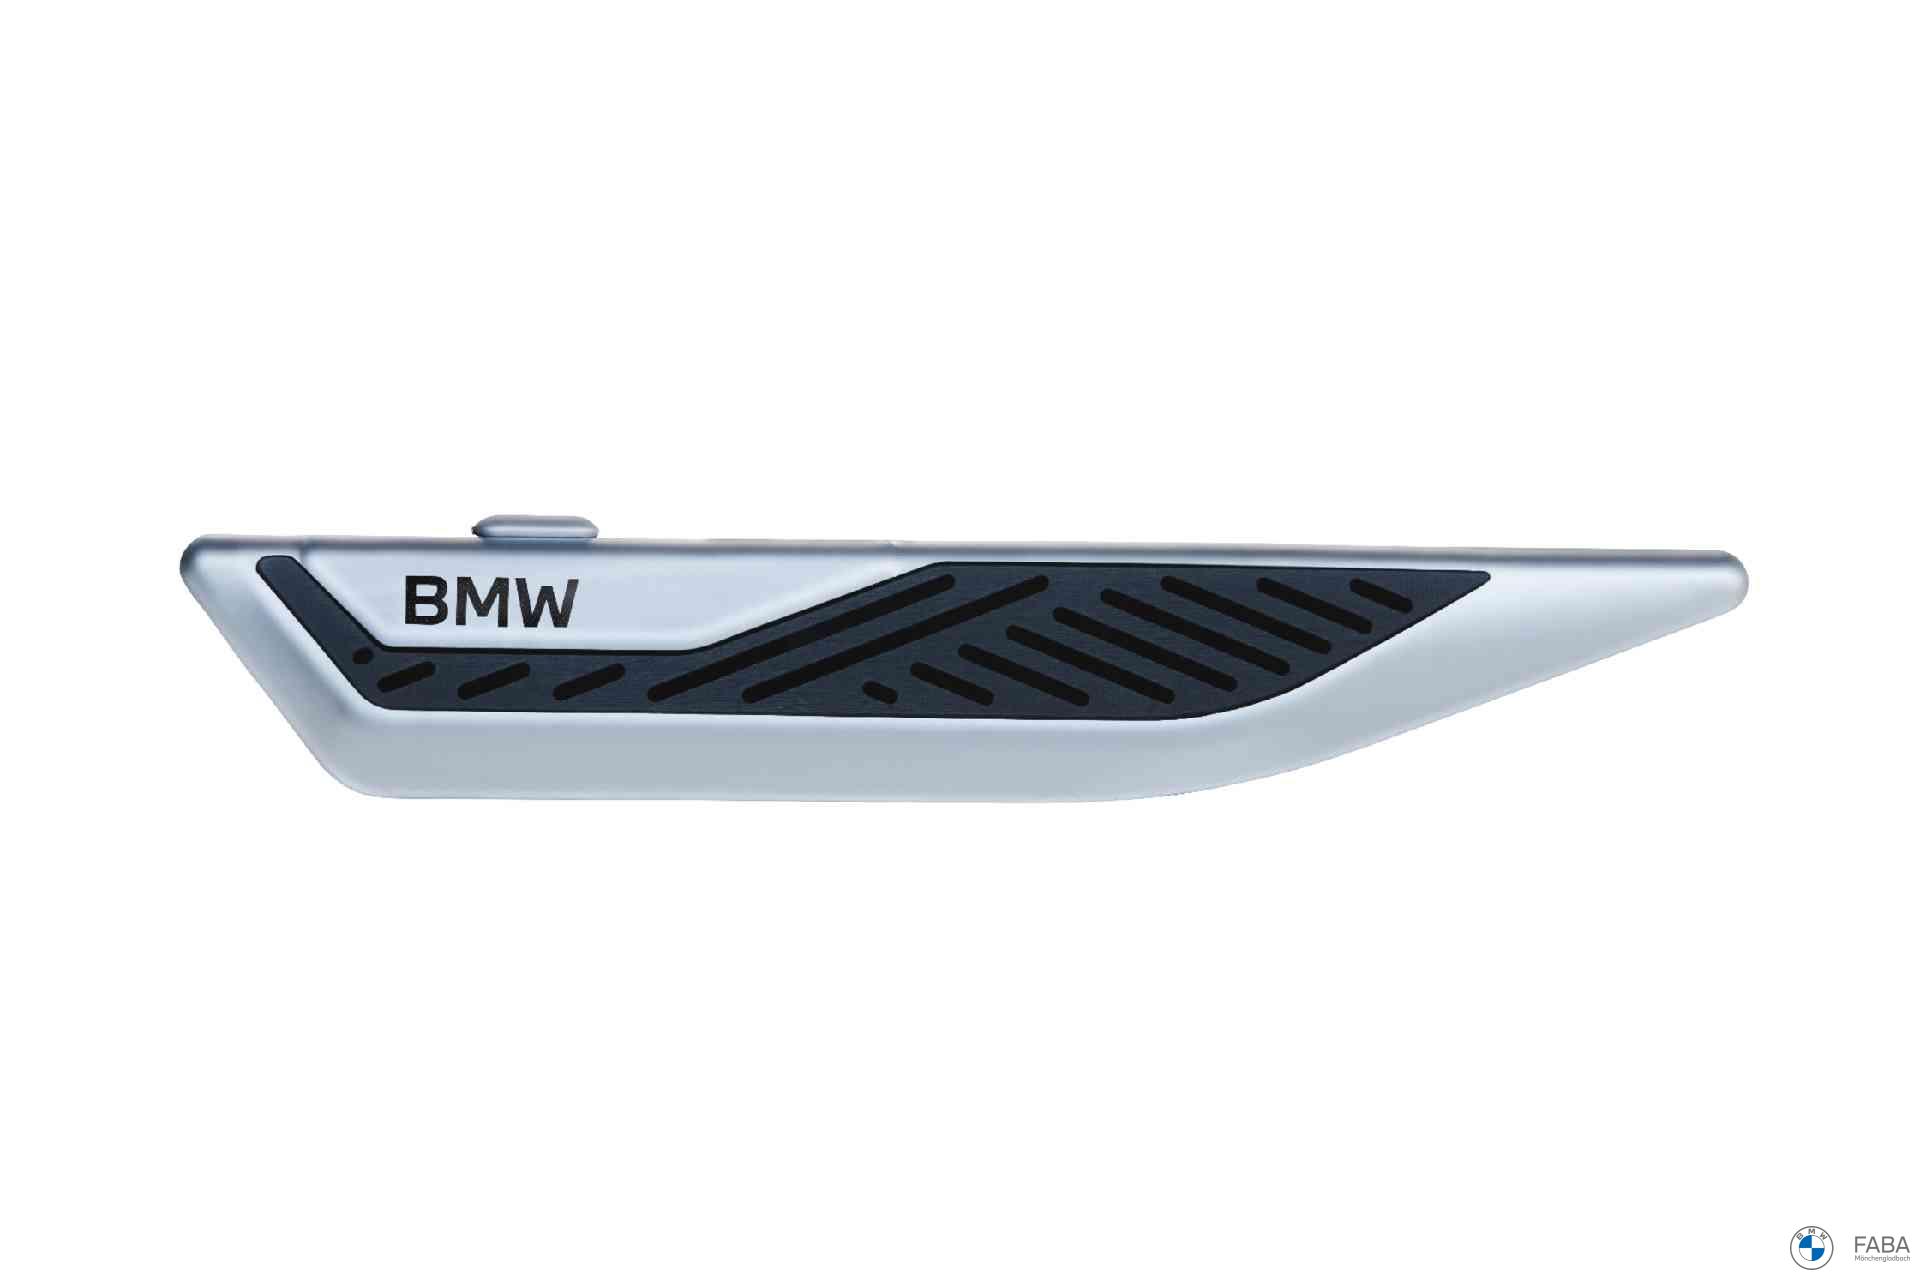 BMW echte Autoduft von Air Kfz-Starter Kit Natur Air mit